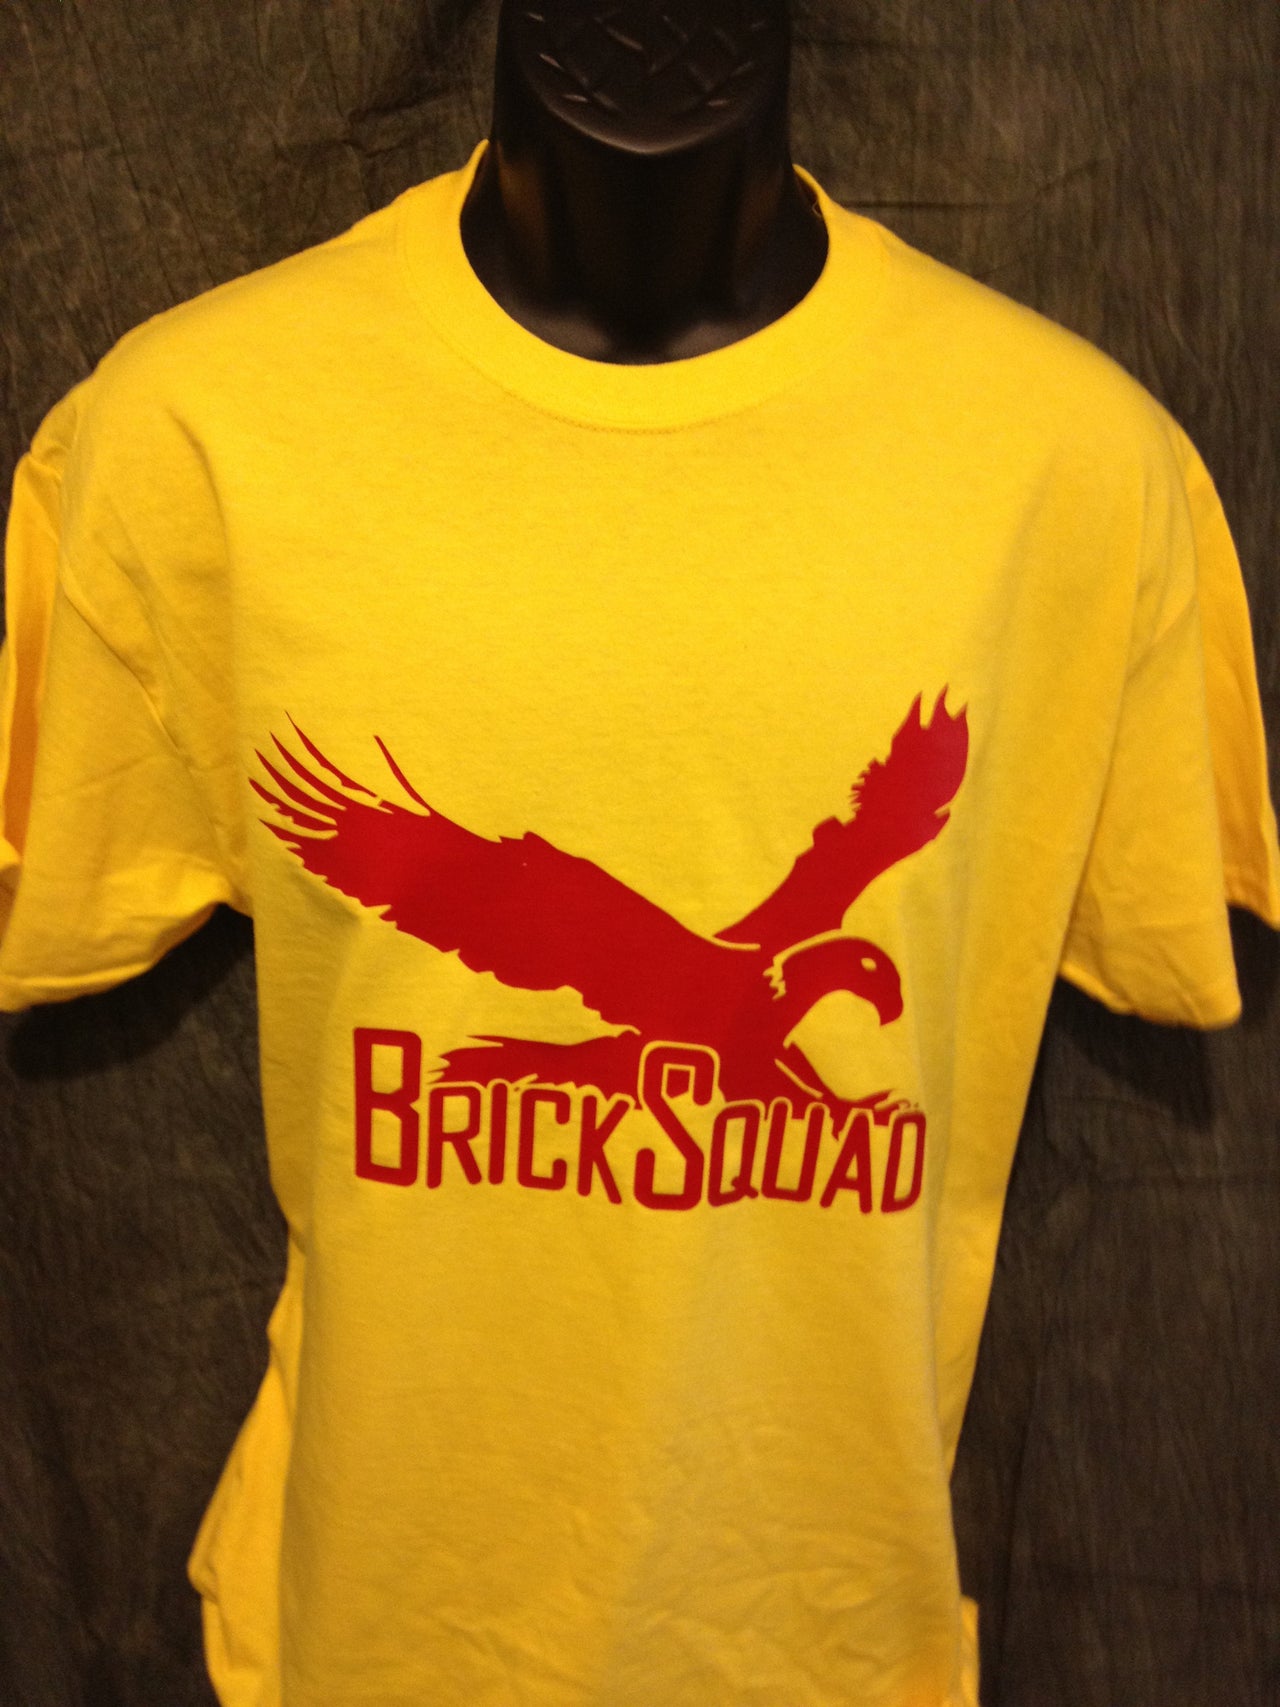 Brick Squad Tshirt: Yellow With Red Print - TshirtNow.net - 1